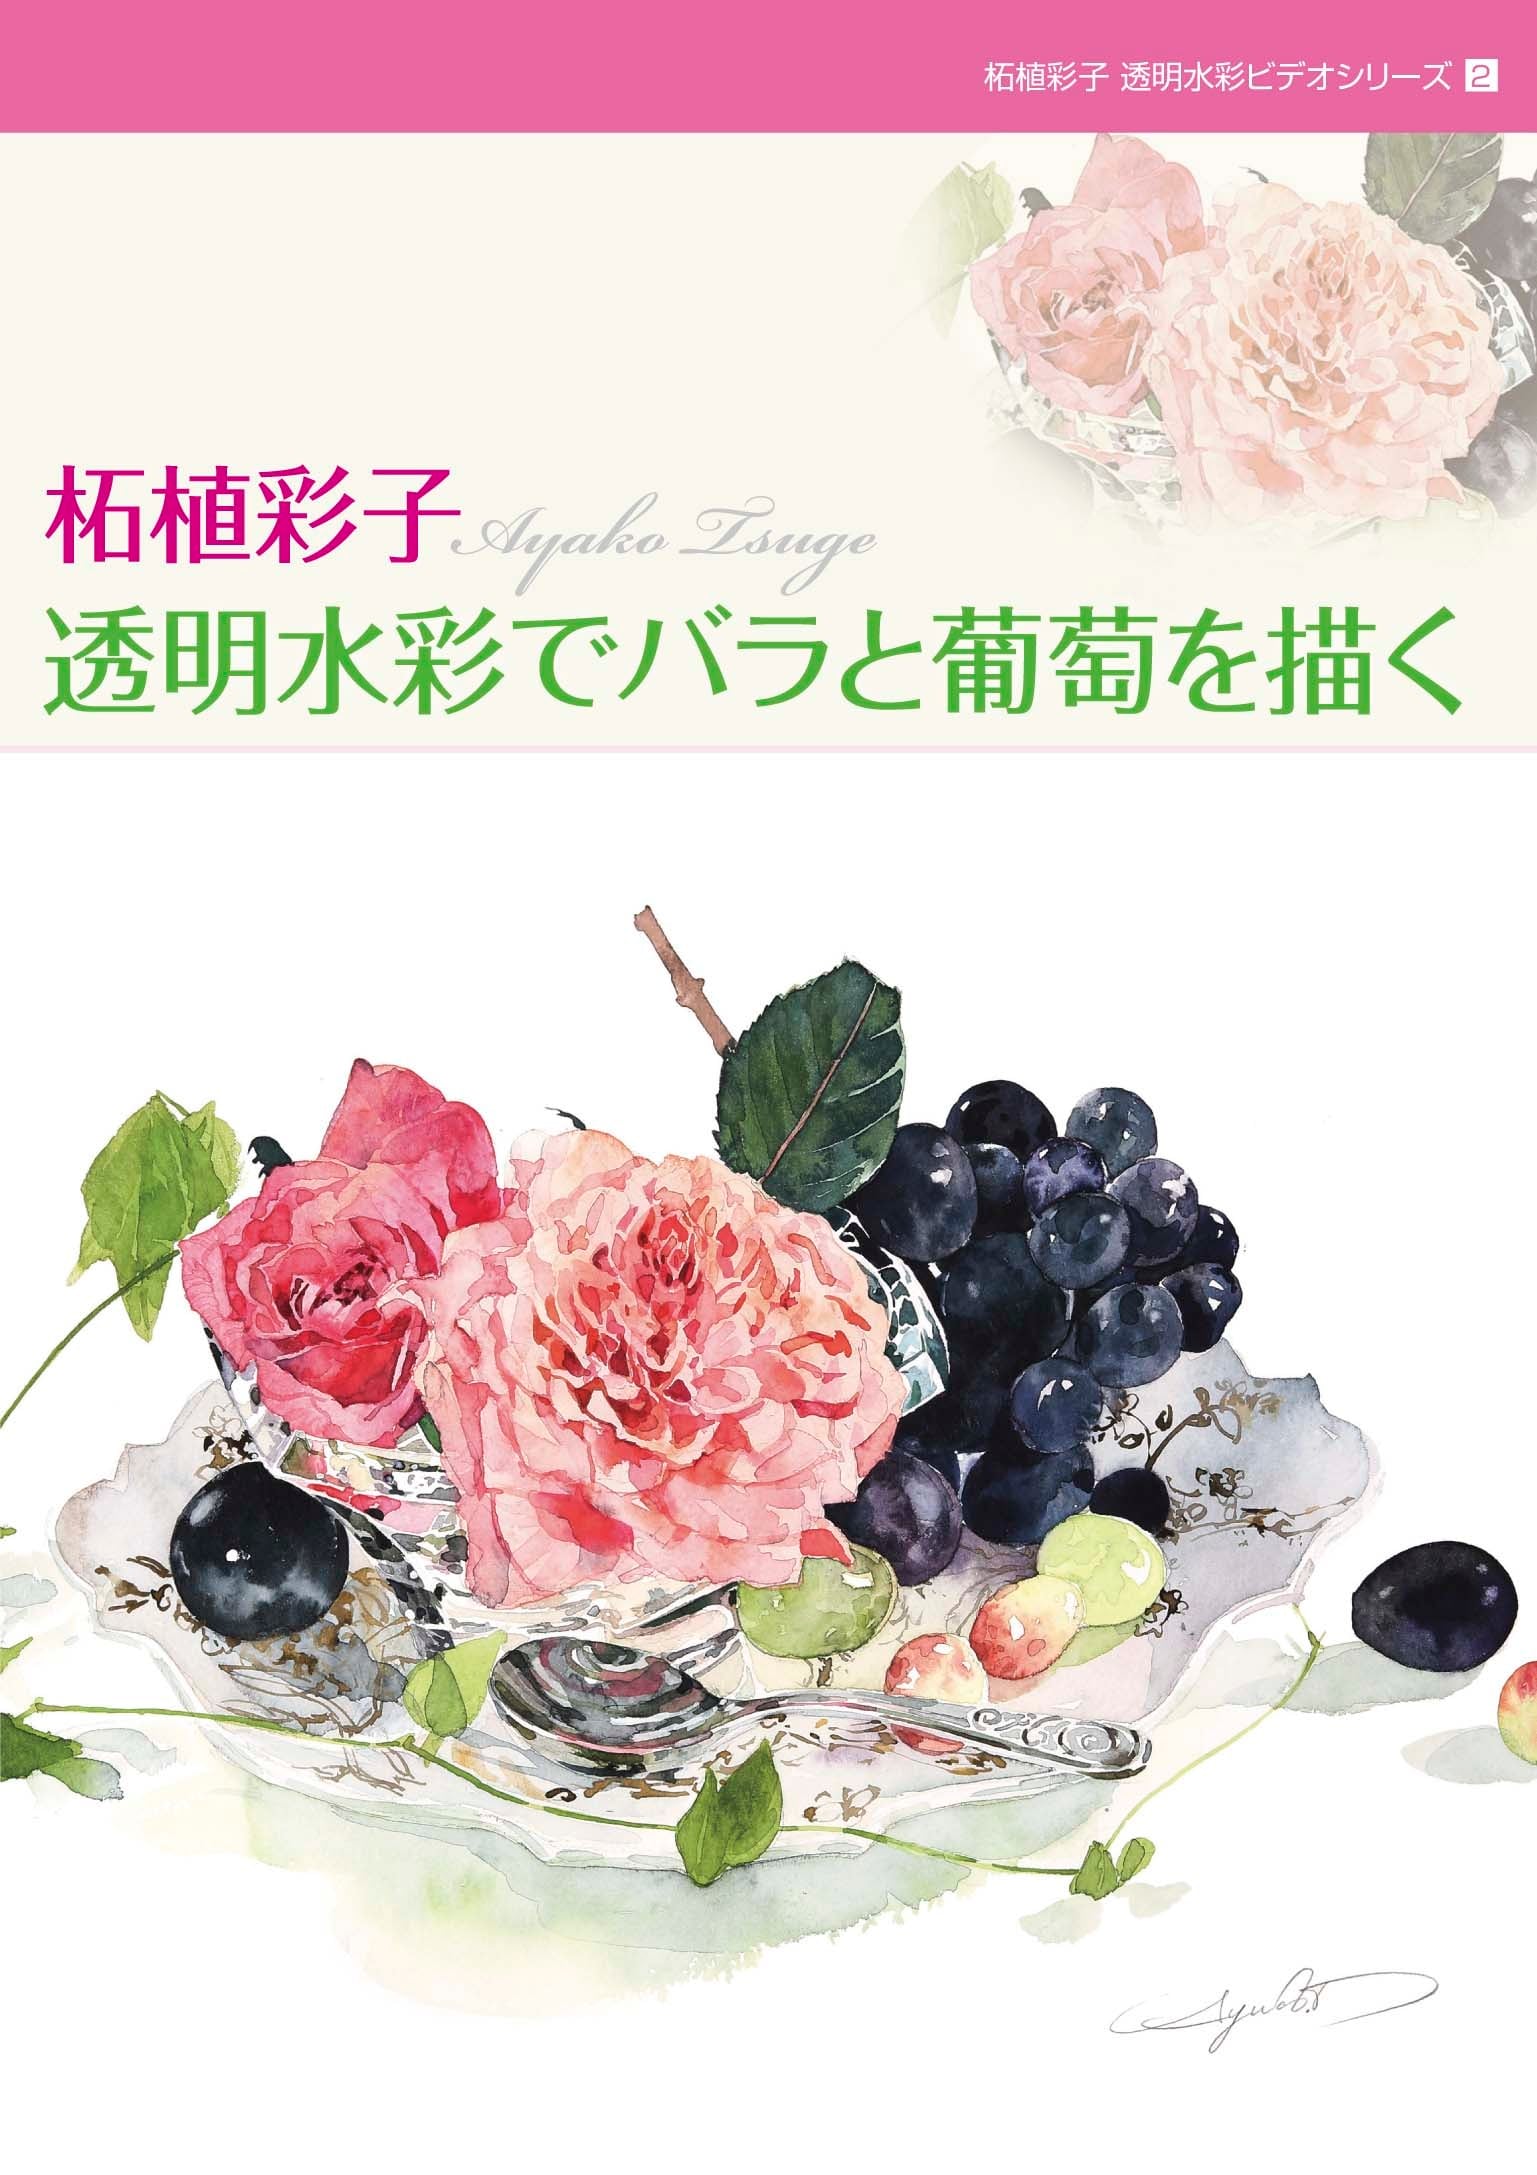 柘植彩子水彩ビデオシリーズ２「バラと葡萄を描く」- Ayako Tsuge Watercolor Video Series 2 